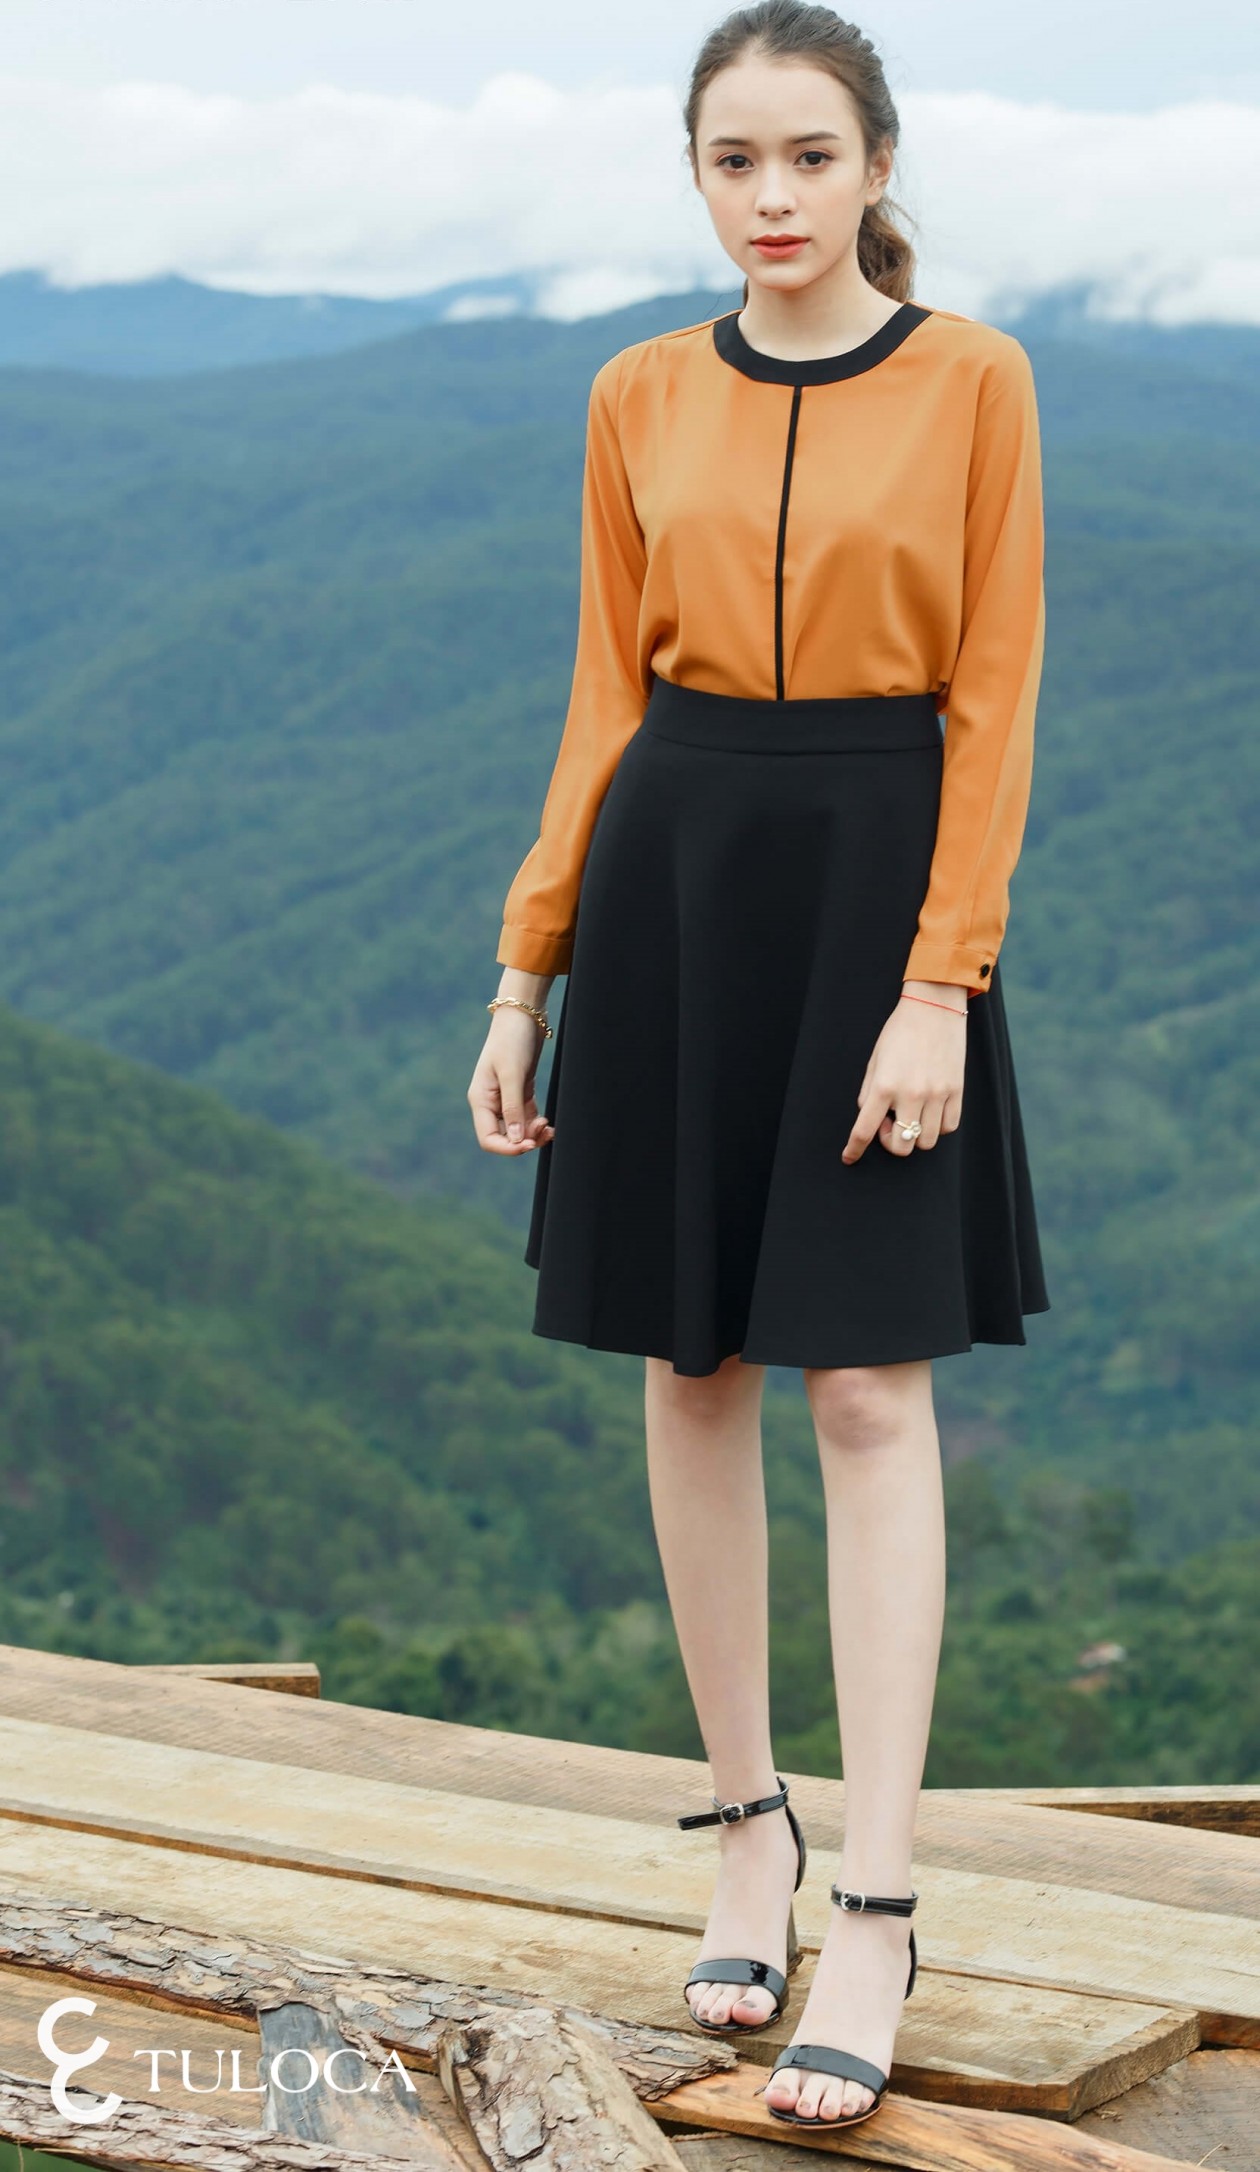 Chân Váy Nữ Thời trang mùa Hè Đẹp HOT 2023 Model Hàn Quốc  Thương hiệu  HH Luxury